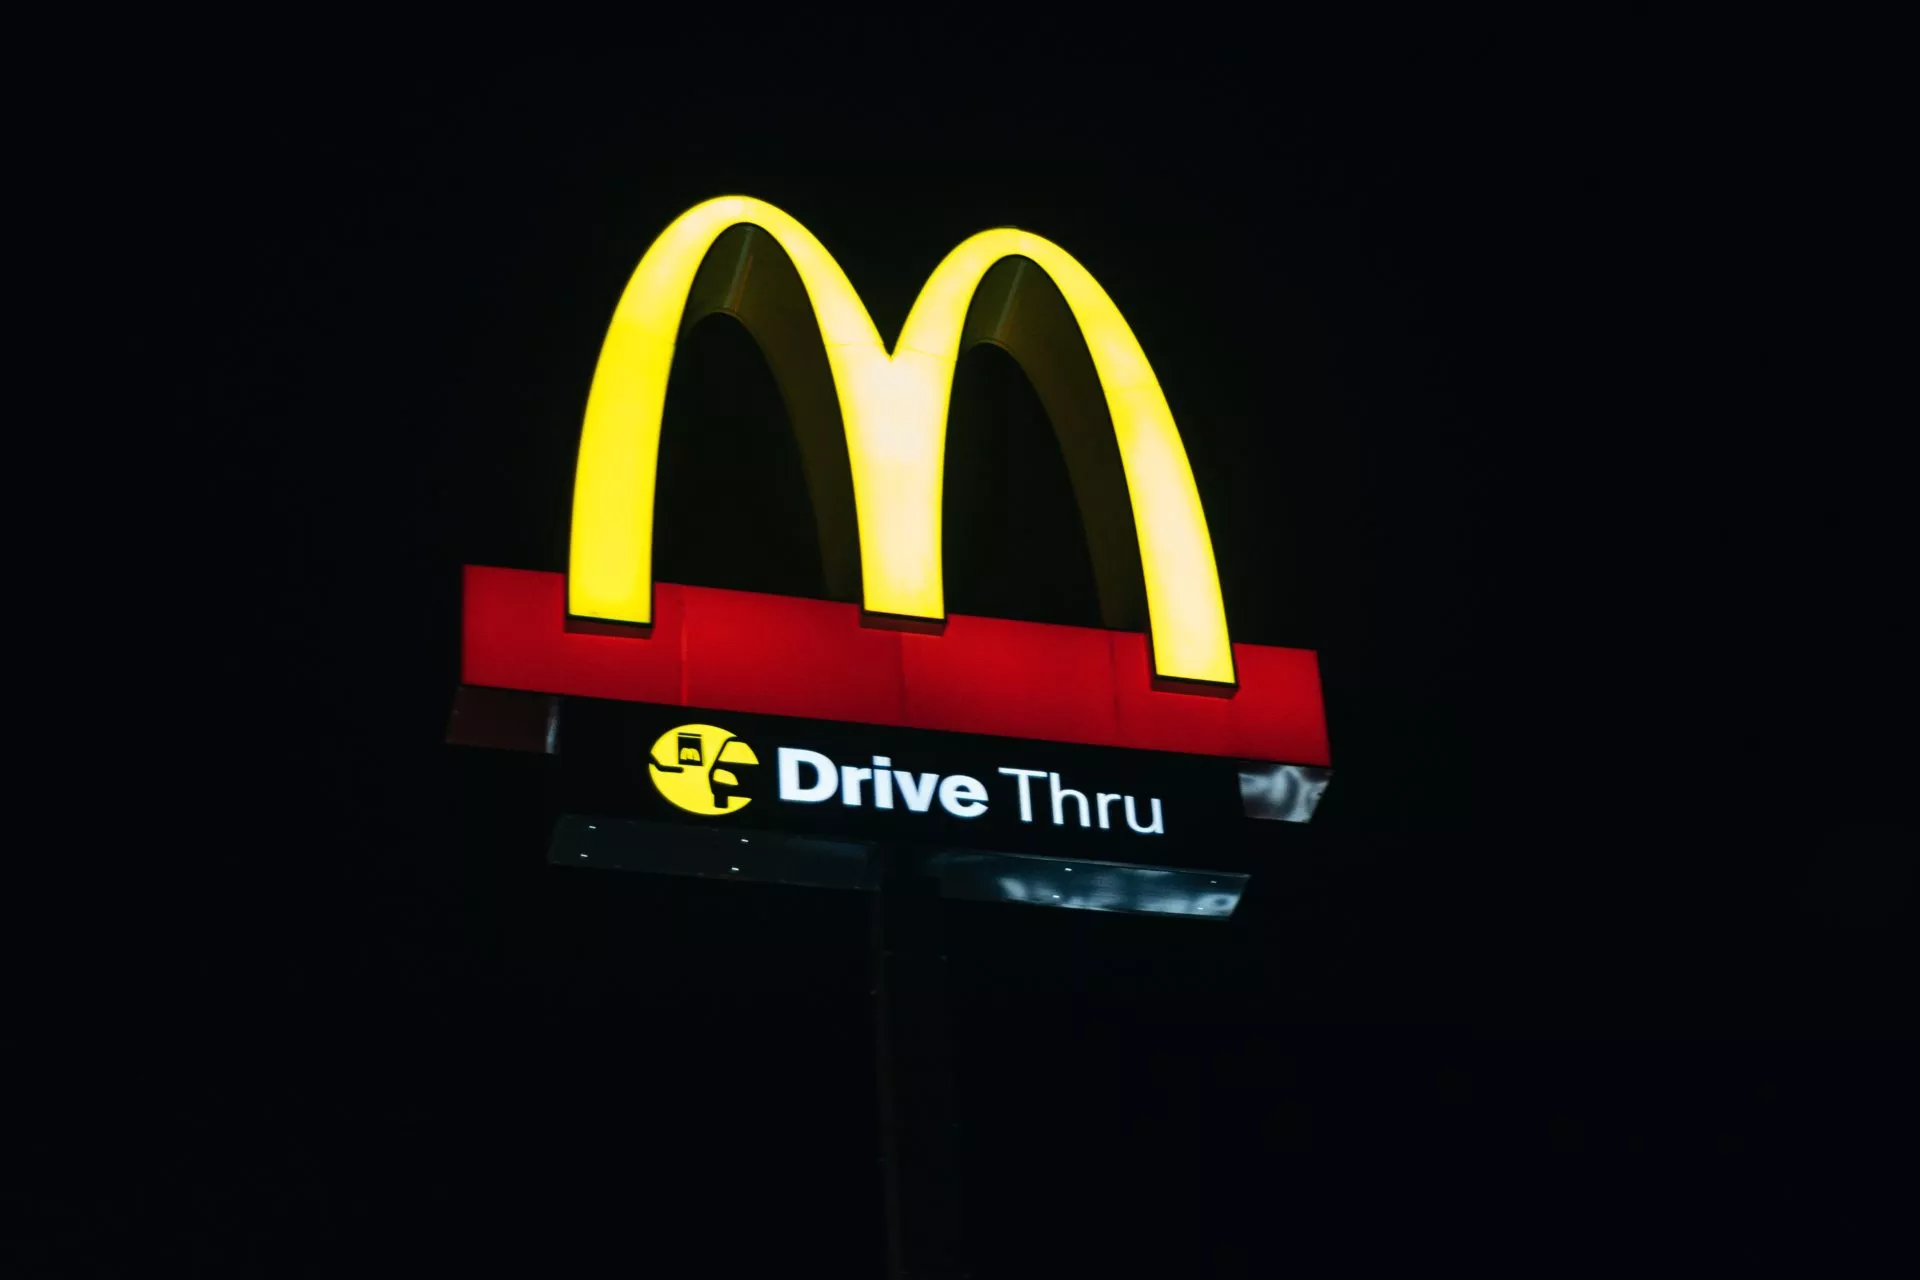 Gaat McDonald’s SHIB betalingen accepteren?